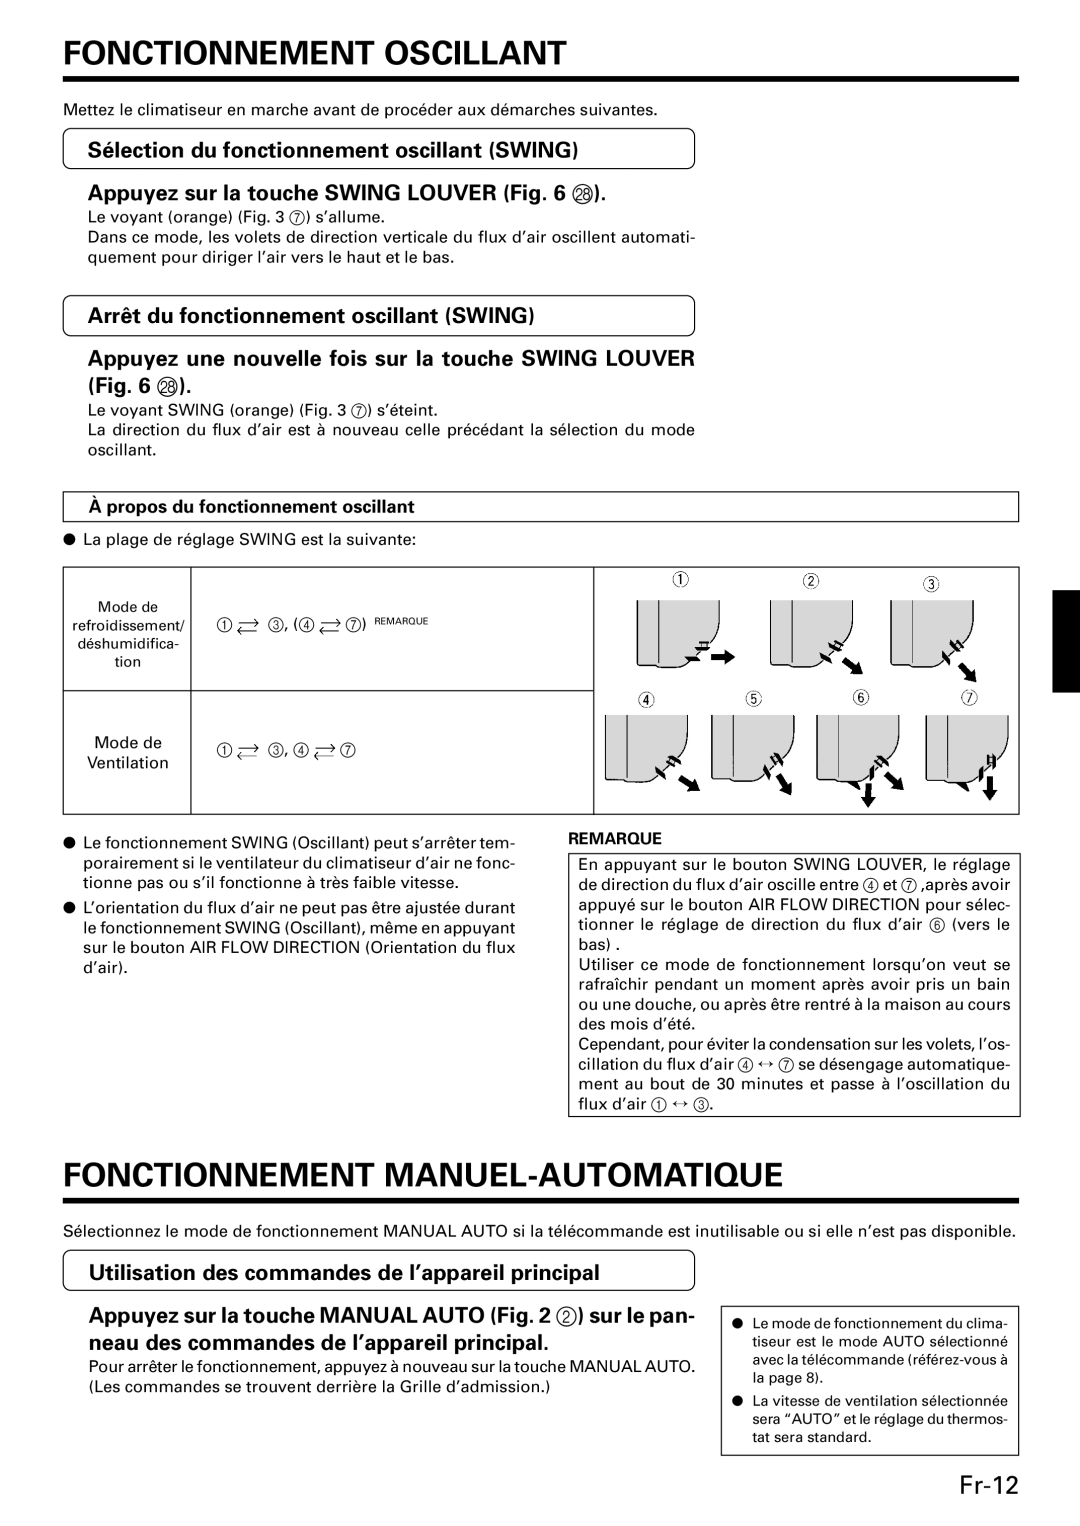 Friedrich MW09C3E Fonctionnement Oscillant, Fonctionnement Manuel-Automatique, Fr-12, Appuyez sur la touche SWING LOUVER R 